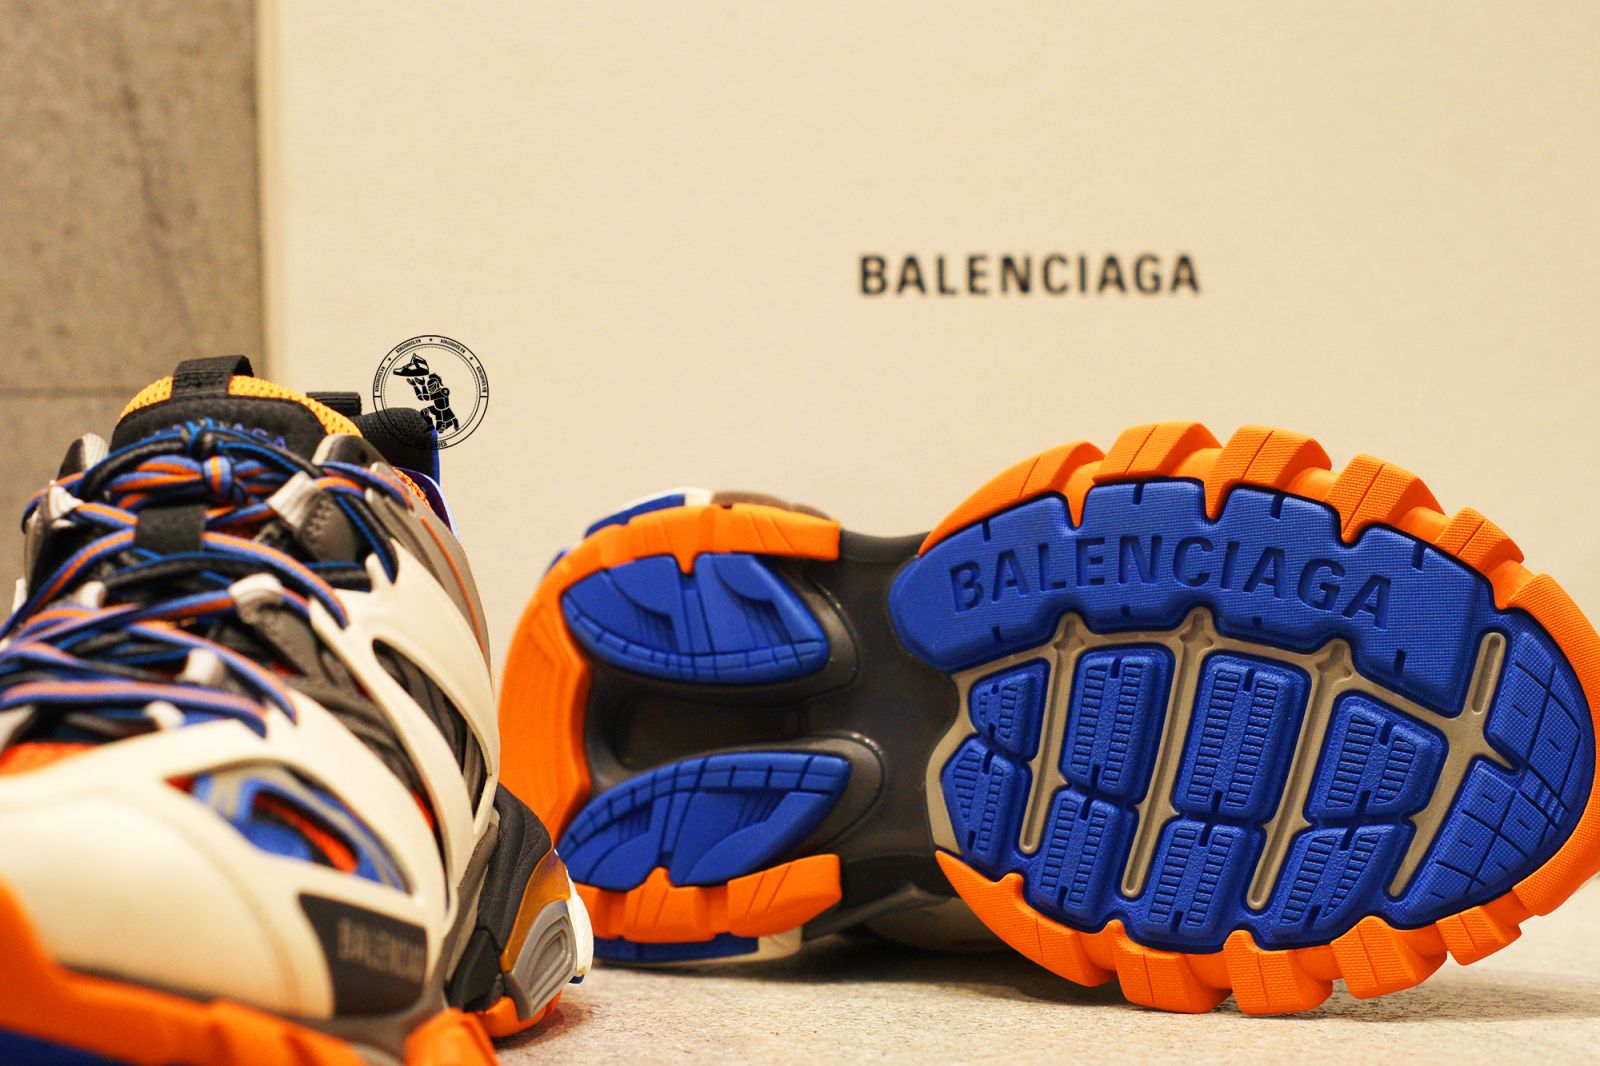 BALENCIGA TRACK King Shoes Sneaker Video Hình ảnh thực tế cận cảnh HCM